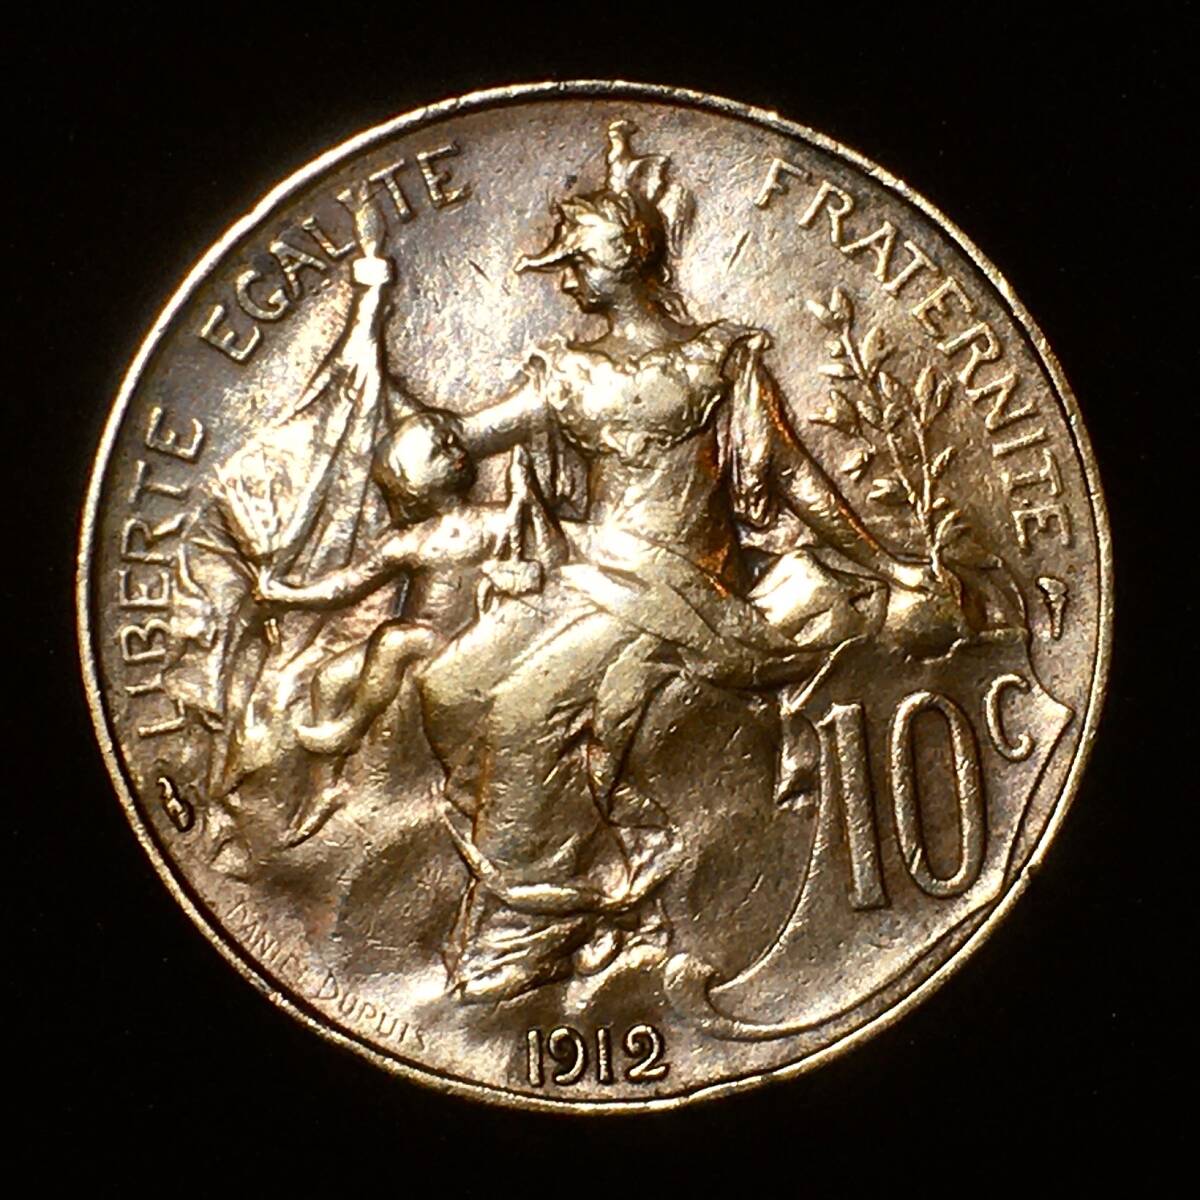 【美しき横顔★マリアンヌ像】フランス 1912年 10サンチーム 銅貨 人気コイン 本物保証 の画像4